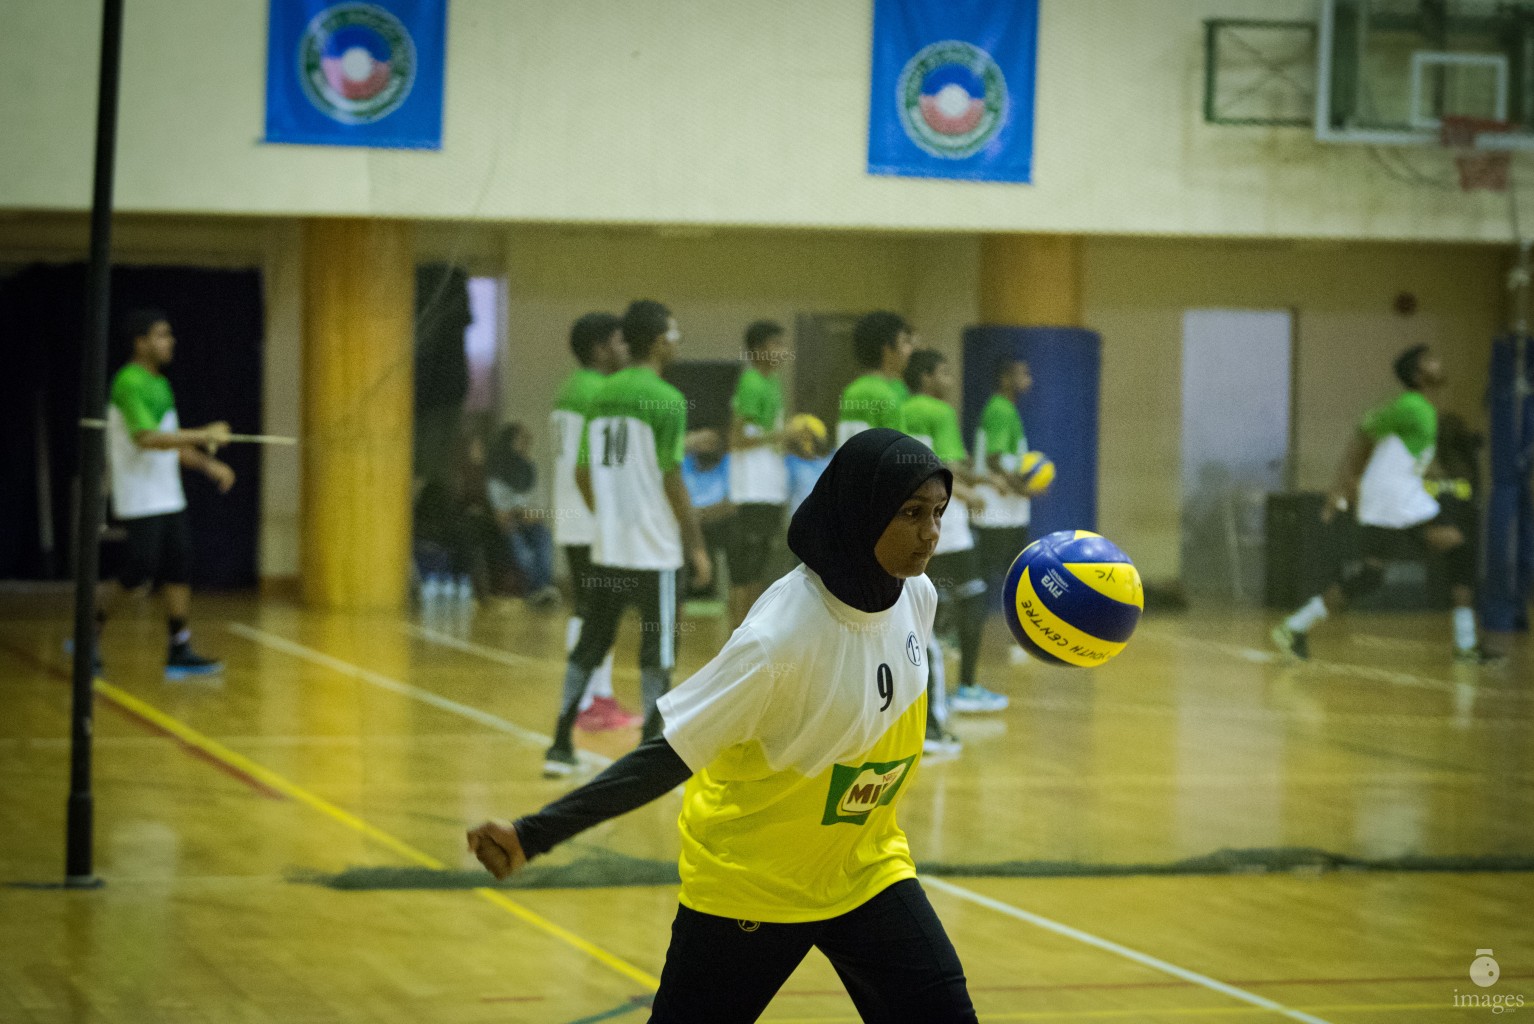 MILO Interschool Volleyball Tournament 2018 (Day 4)